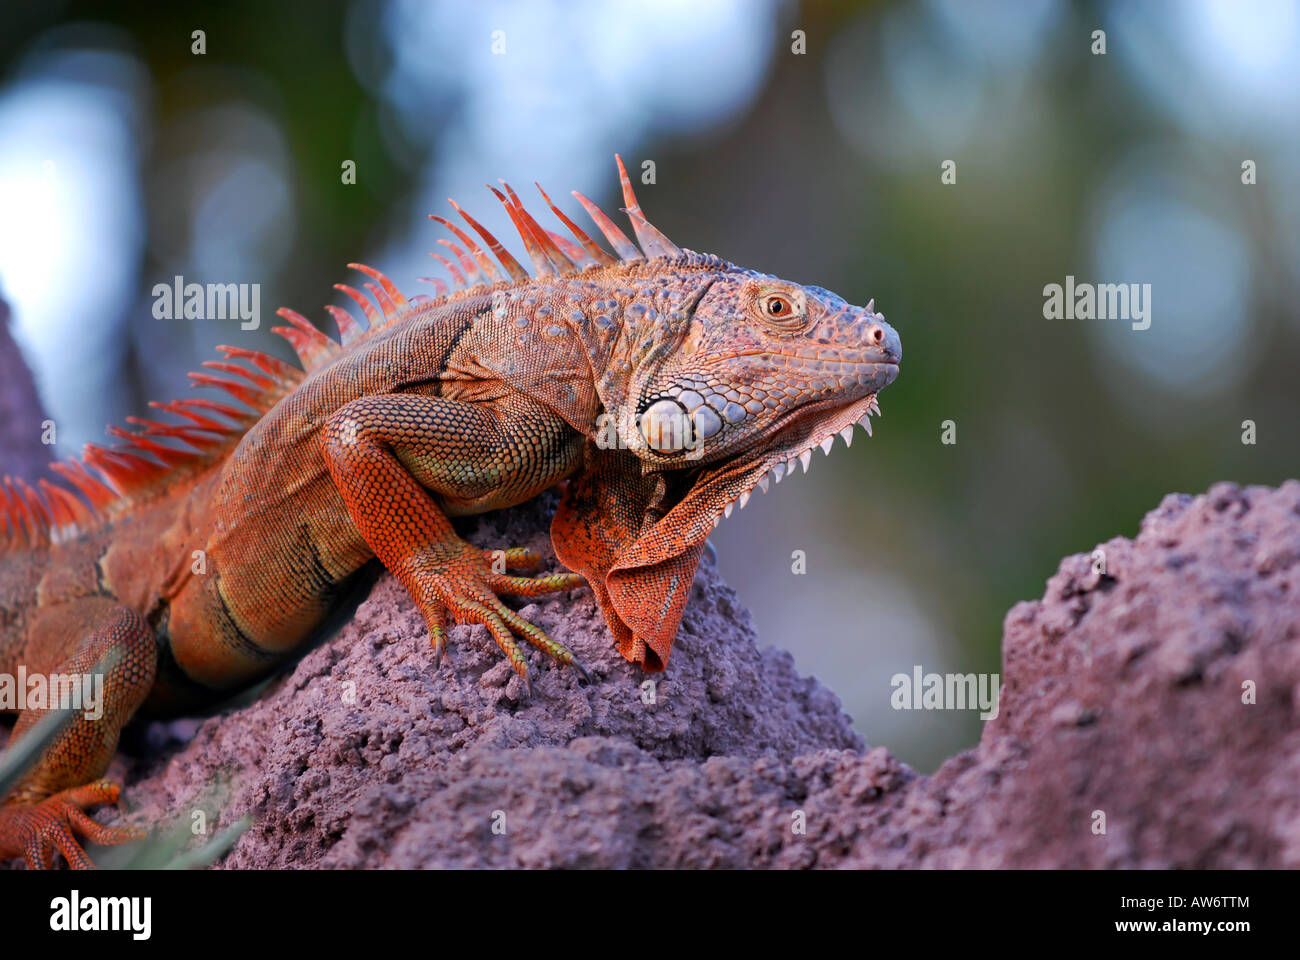 Iguana on the rocks Stock Photo